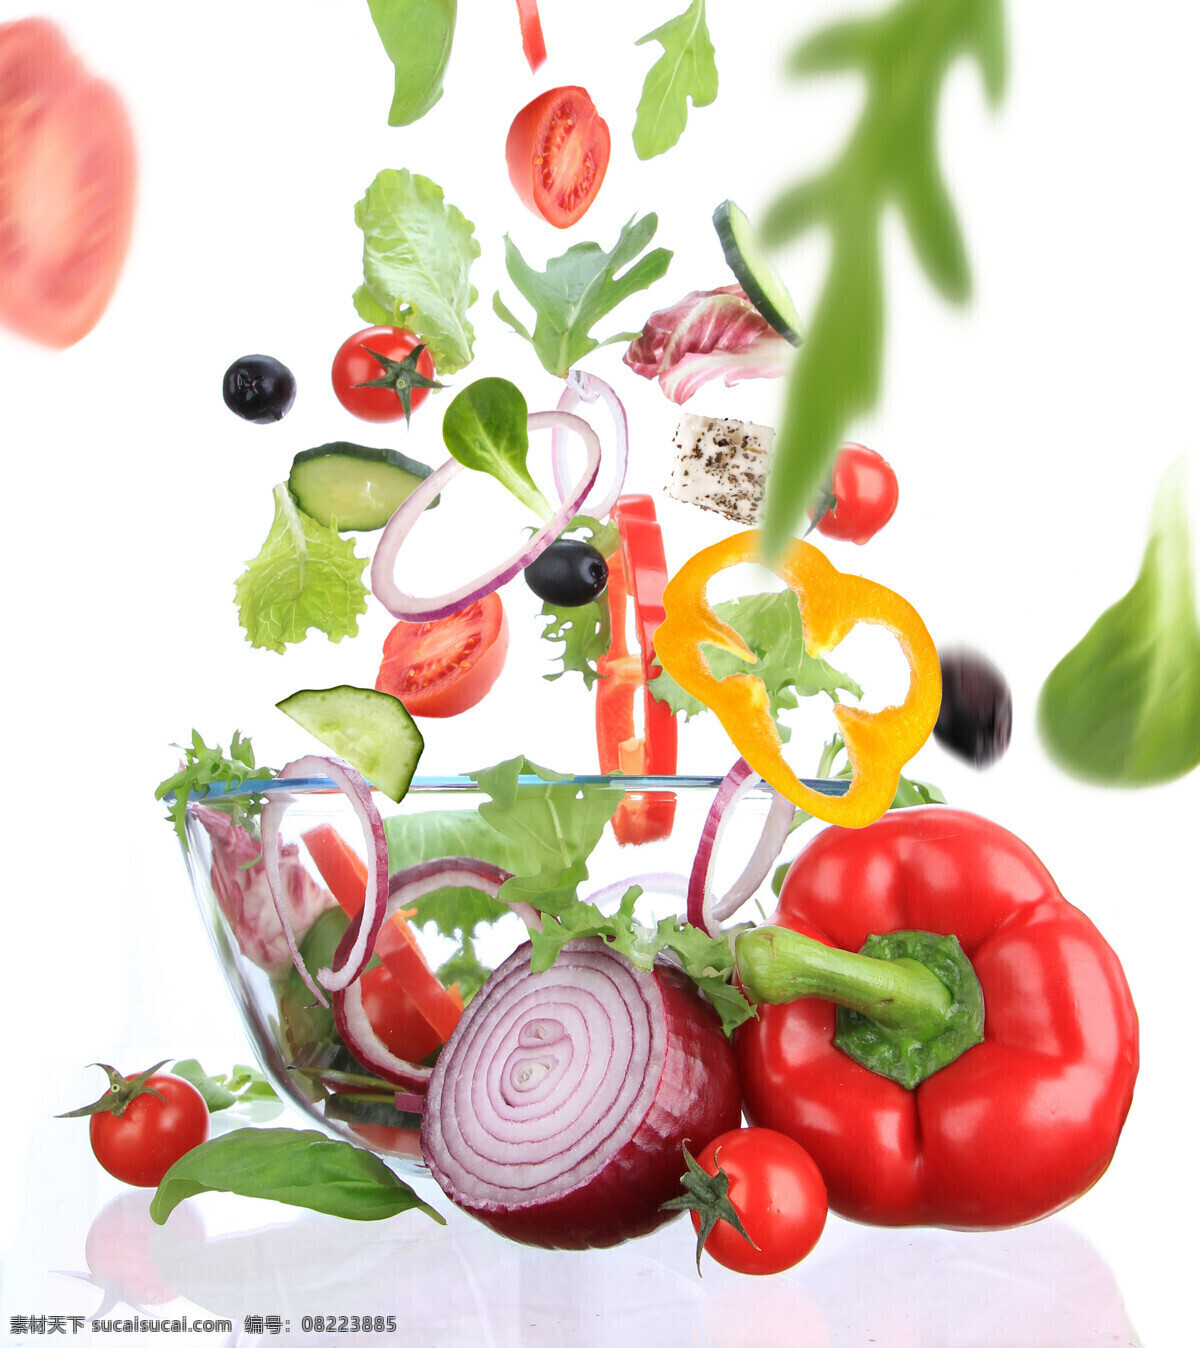 唯美蔬菜 唯美 美味 美食 食物 食品 新鲜 健康 原料 原生态 辣椒 洋葱 餐饮美食 食物原料